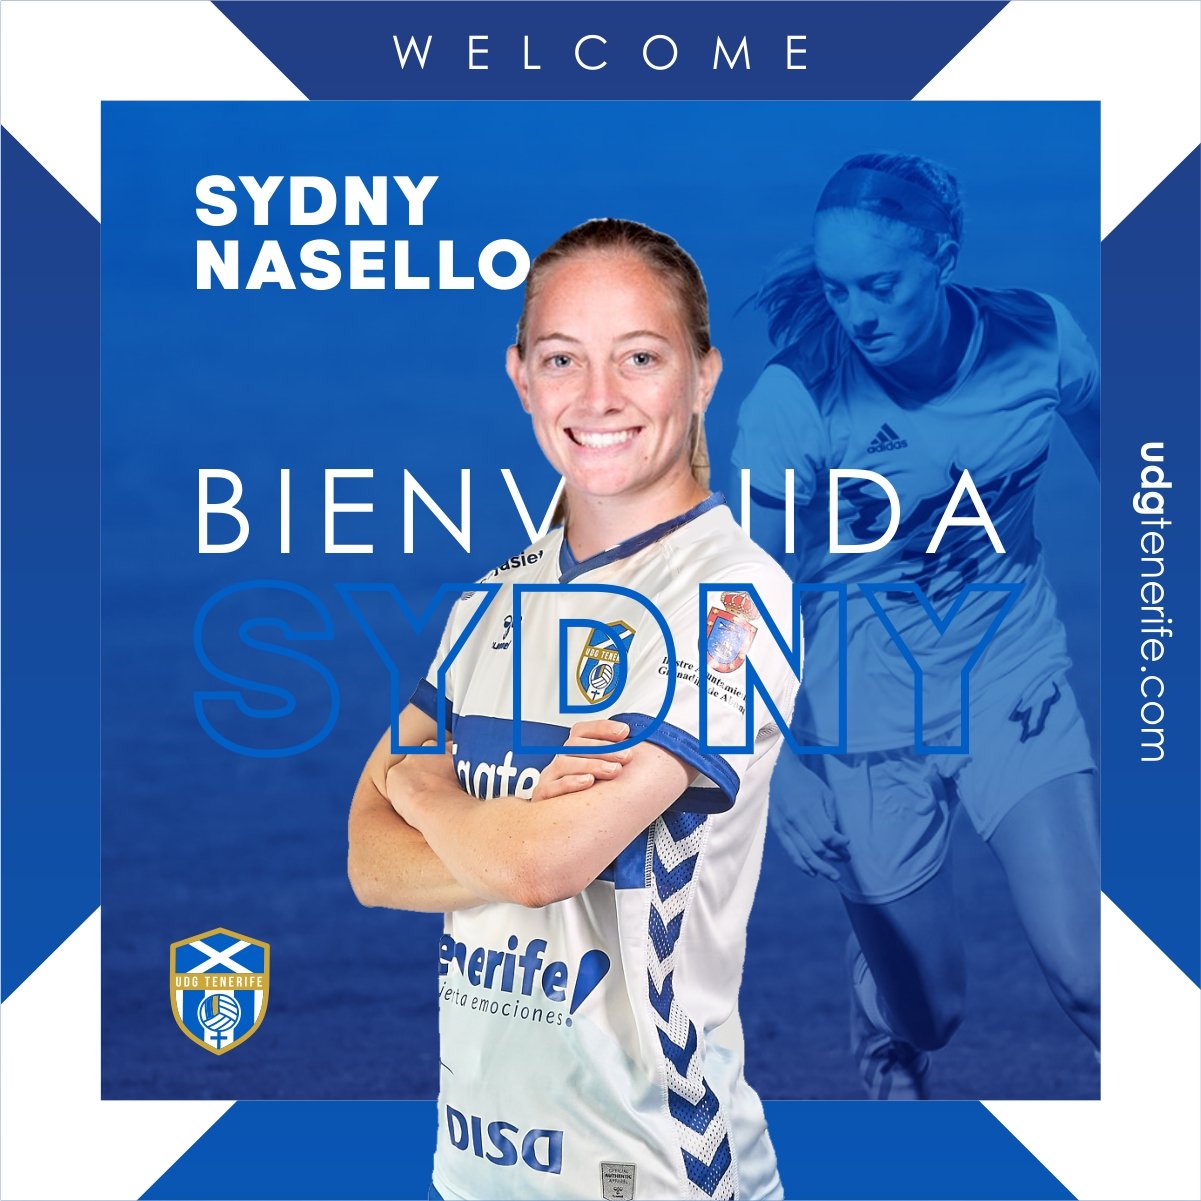 La delantera estadounidense Sydny Nasello, nueva jugadora de la UDG Tenerife